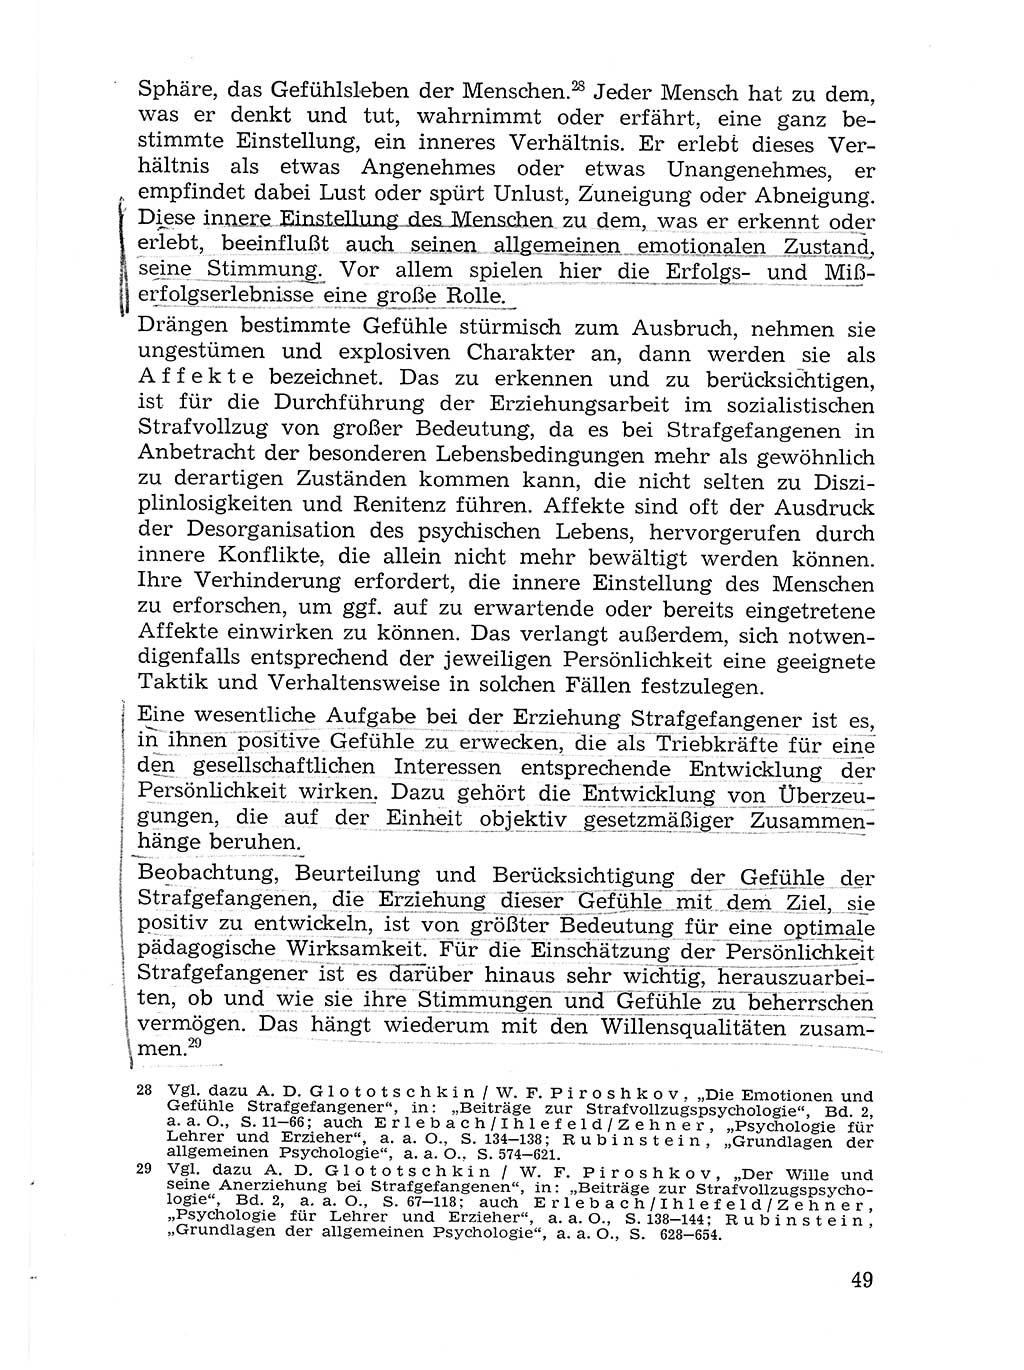 Sozialistischer Strafvollzug (SV) [Deutsche Demokratische Republik (DDR)] 1972, Seite 49 (Soz. SV DDR 1972, S. 49)